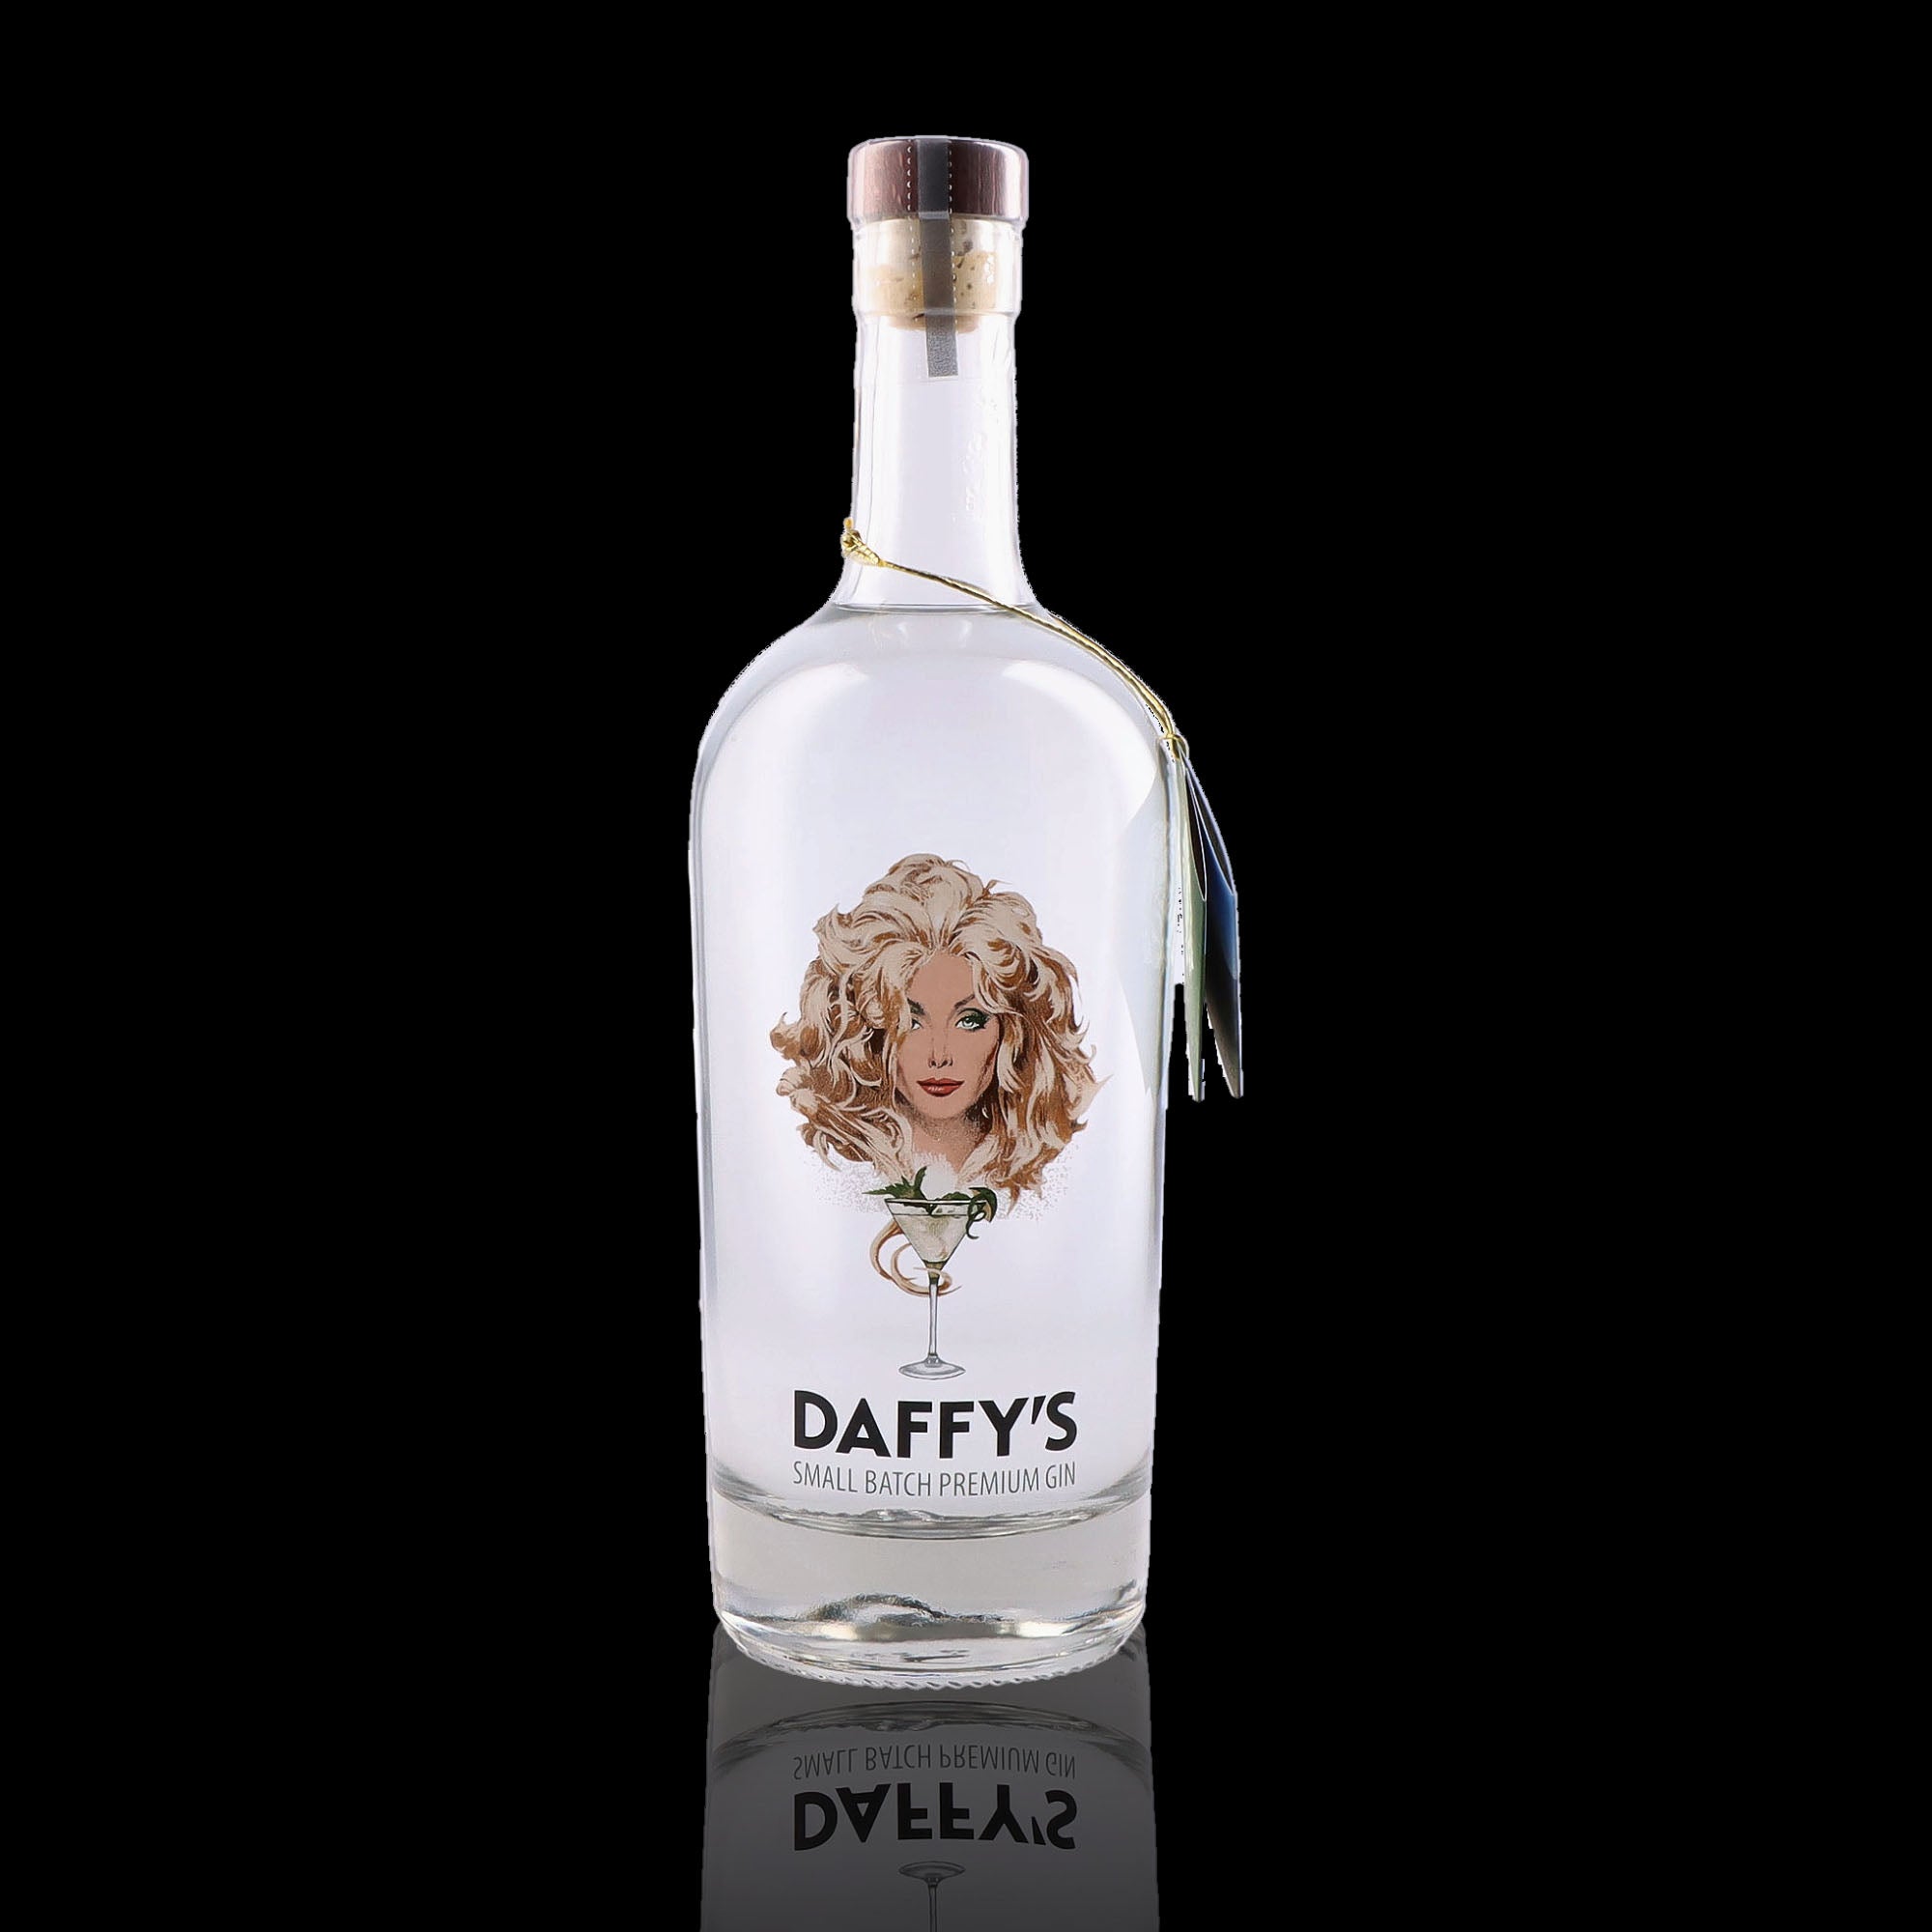 Une bouteille de Gin, de la marque Daffy's.